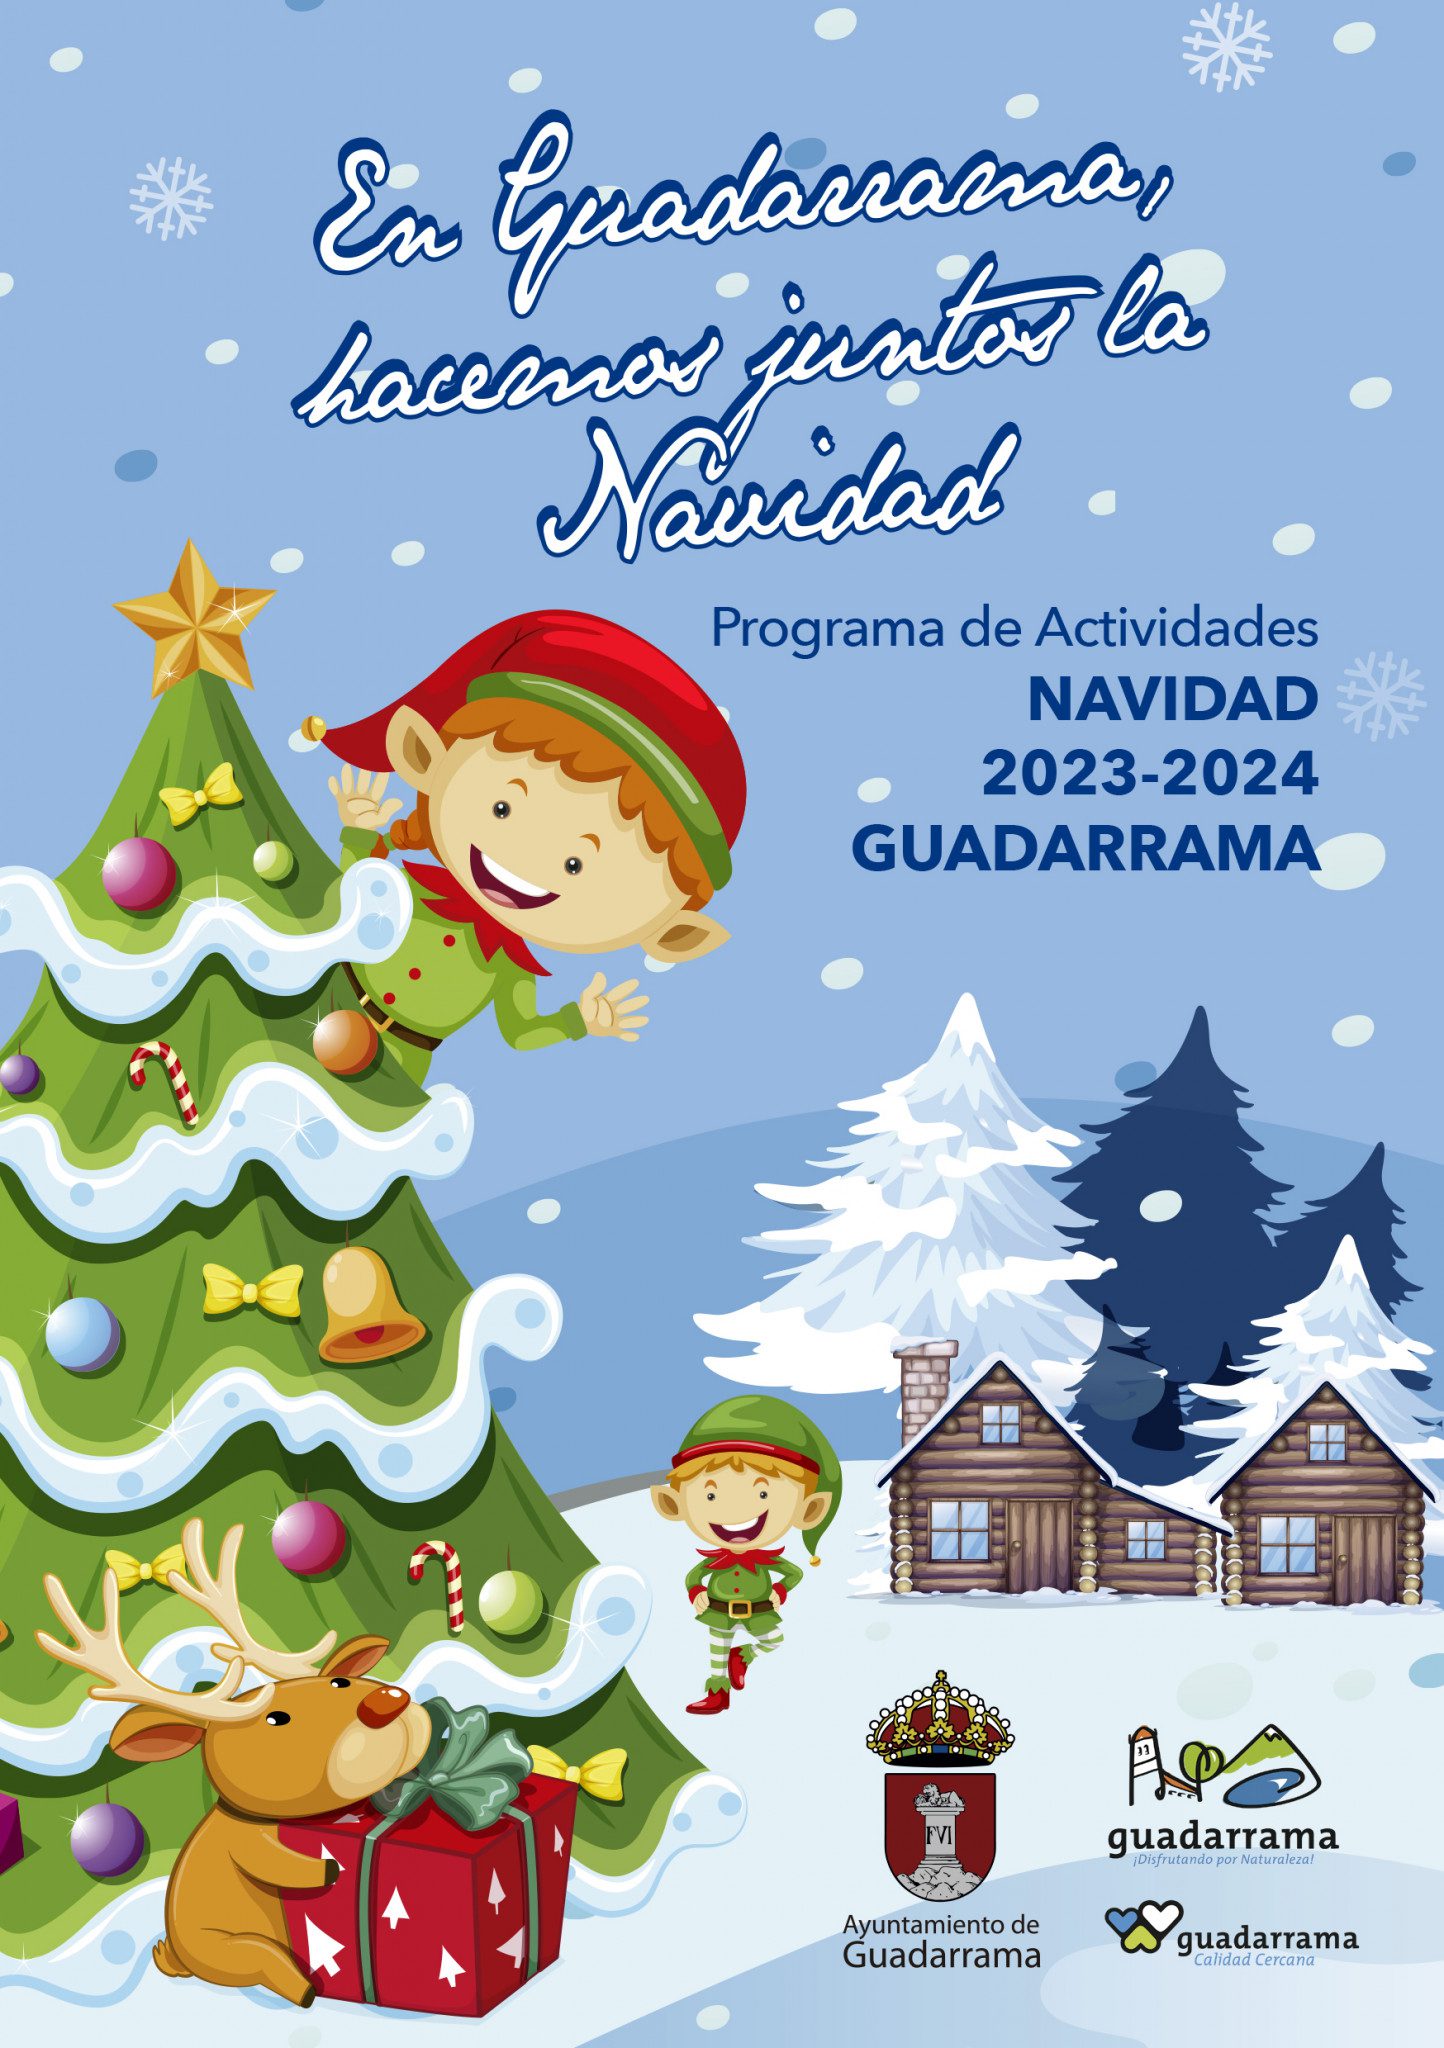 Cartel de la programación navideña de Guadarrama